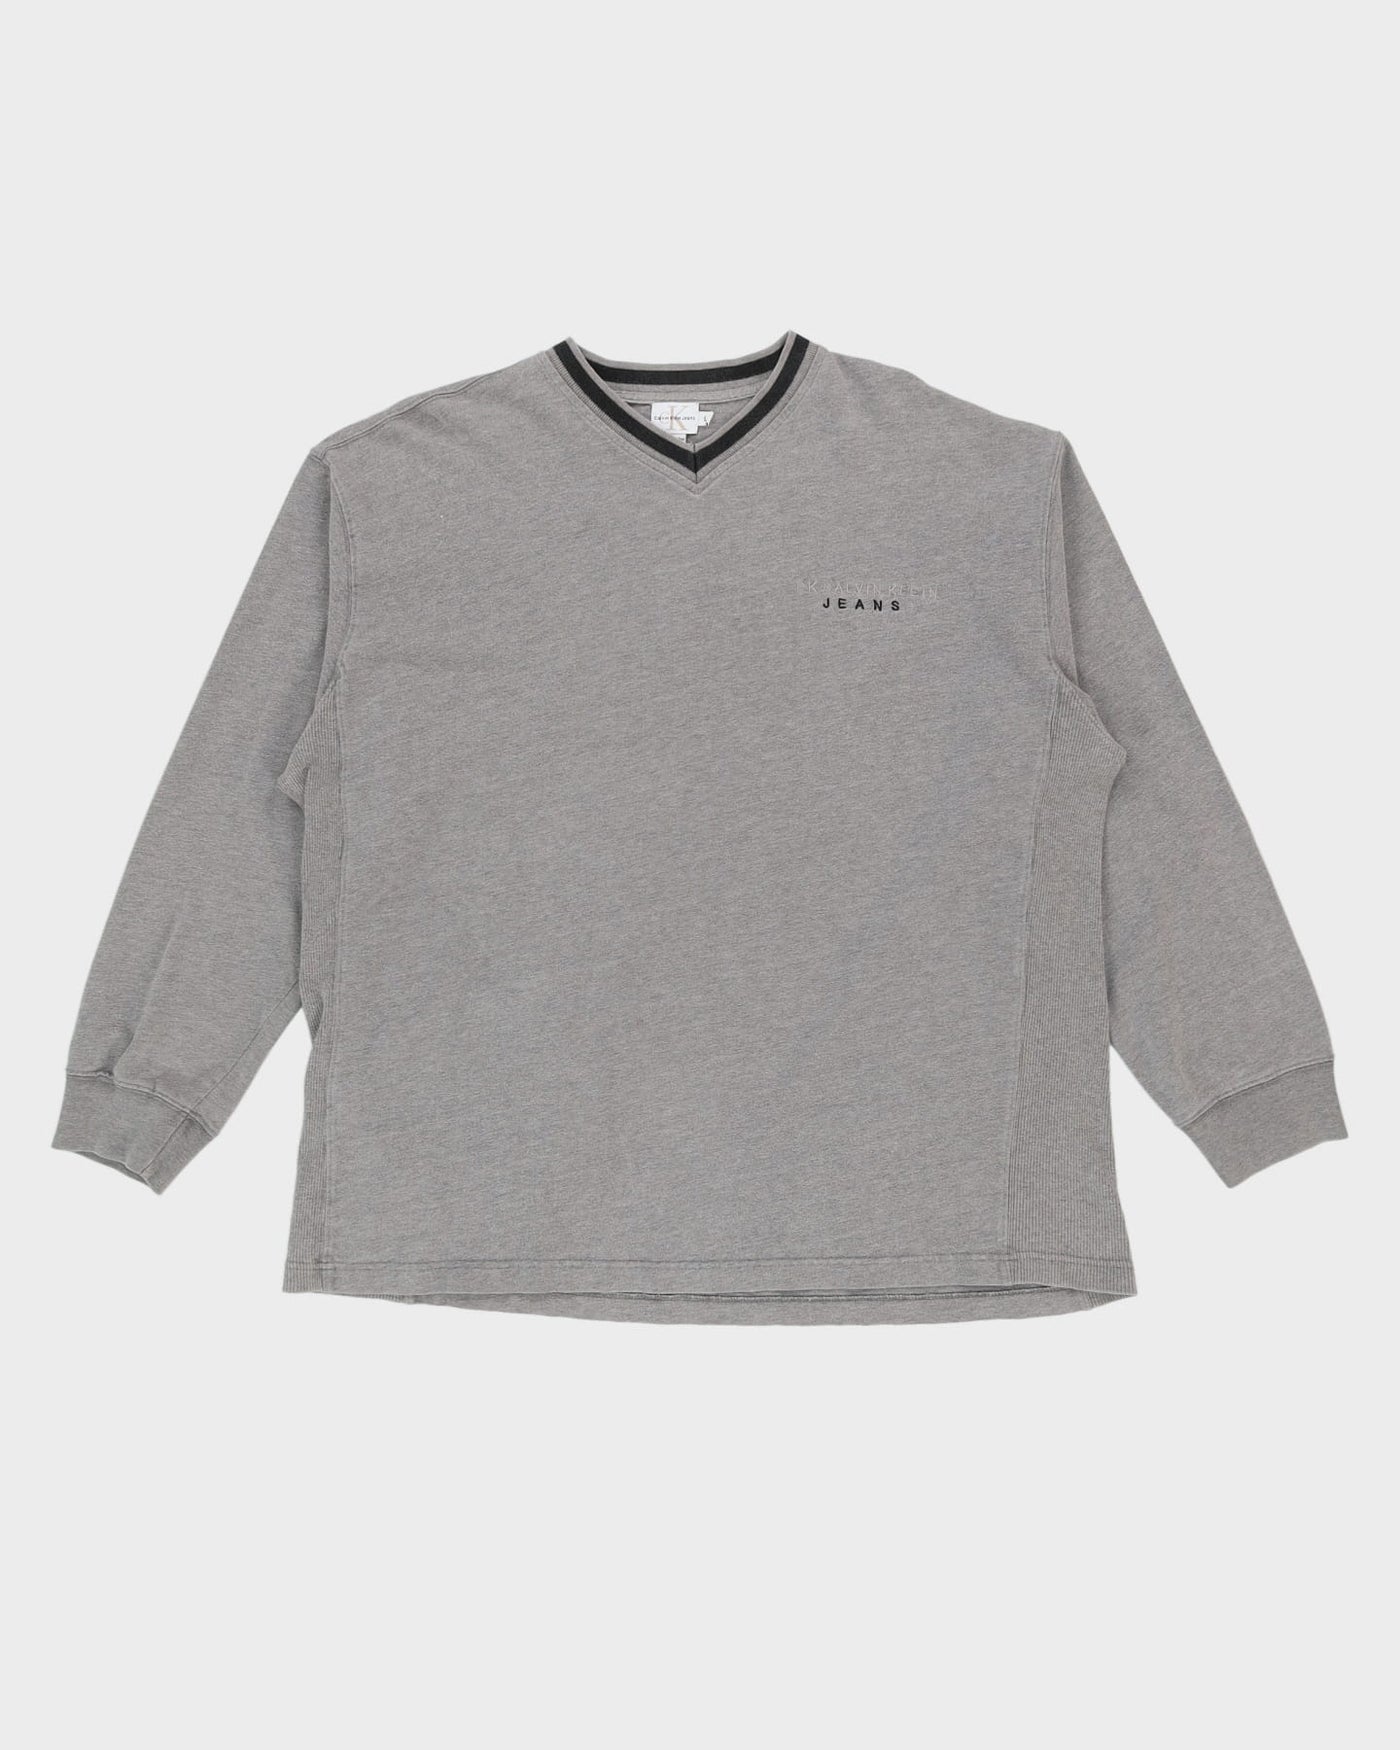 Calvin Klein Grey Long Sleeve Heavyweight T-Shirt - XL